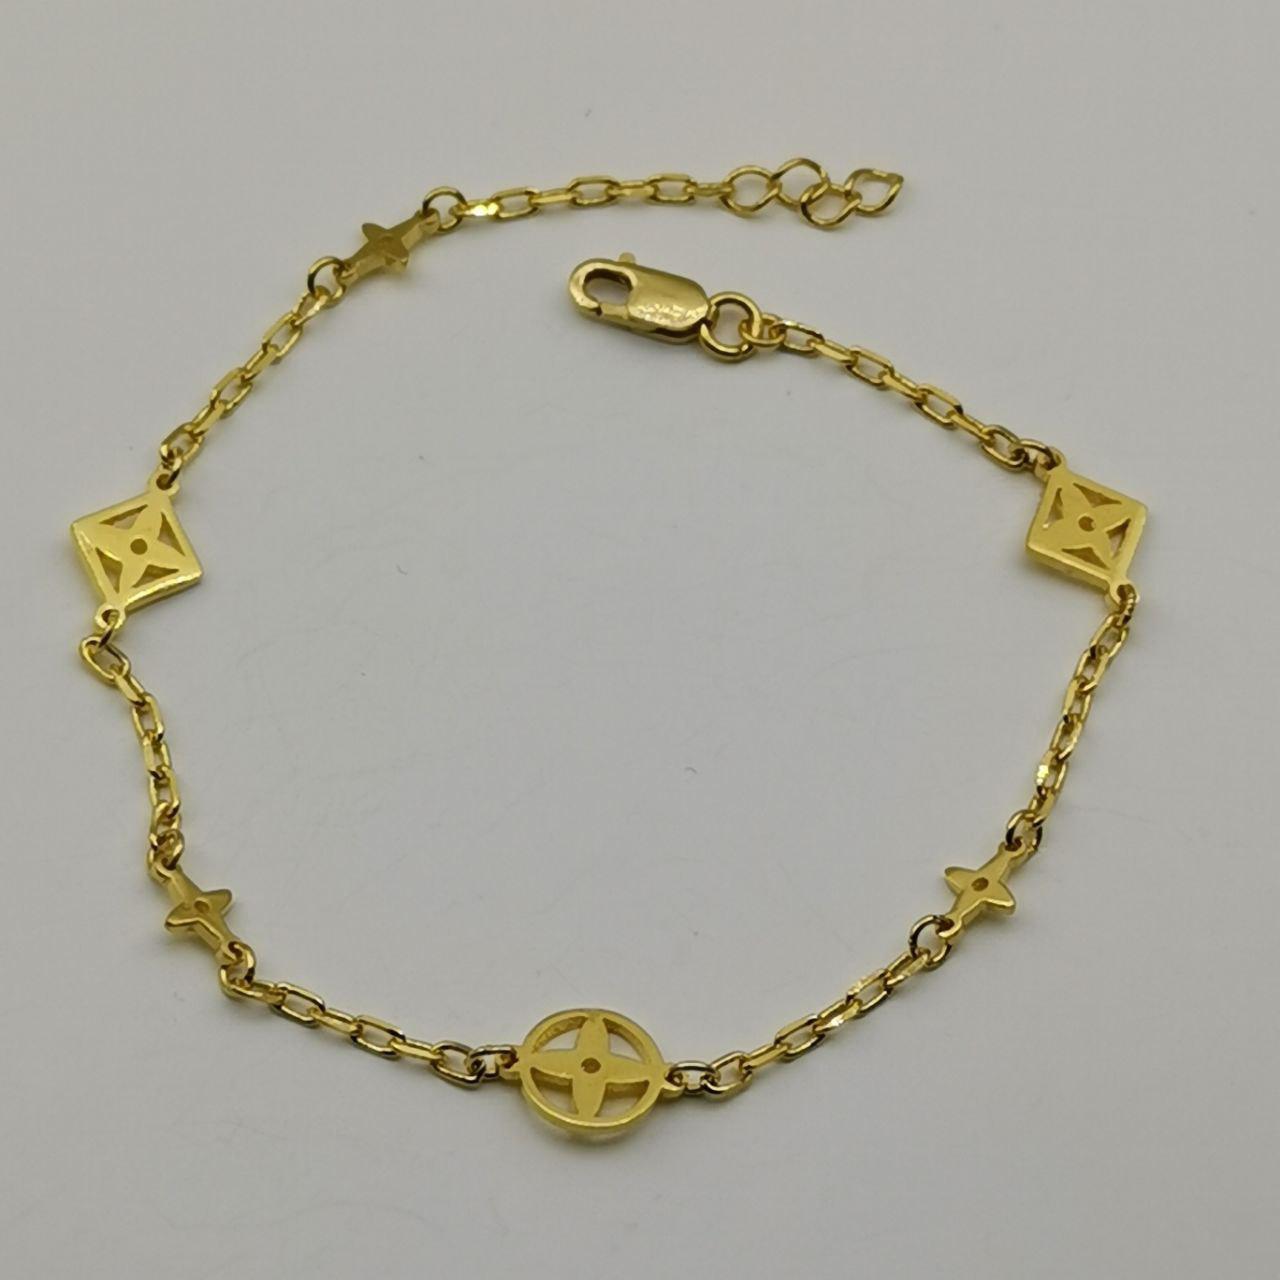 22k / 916 Gold VL Bracelet V6-916 gold-Best Gold Shop